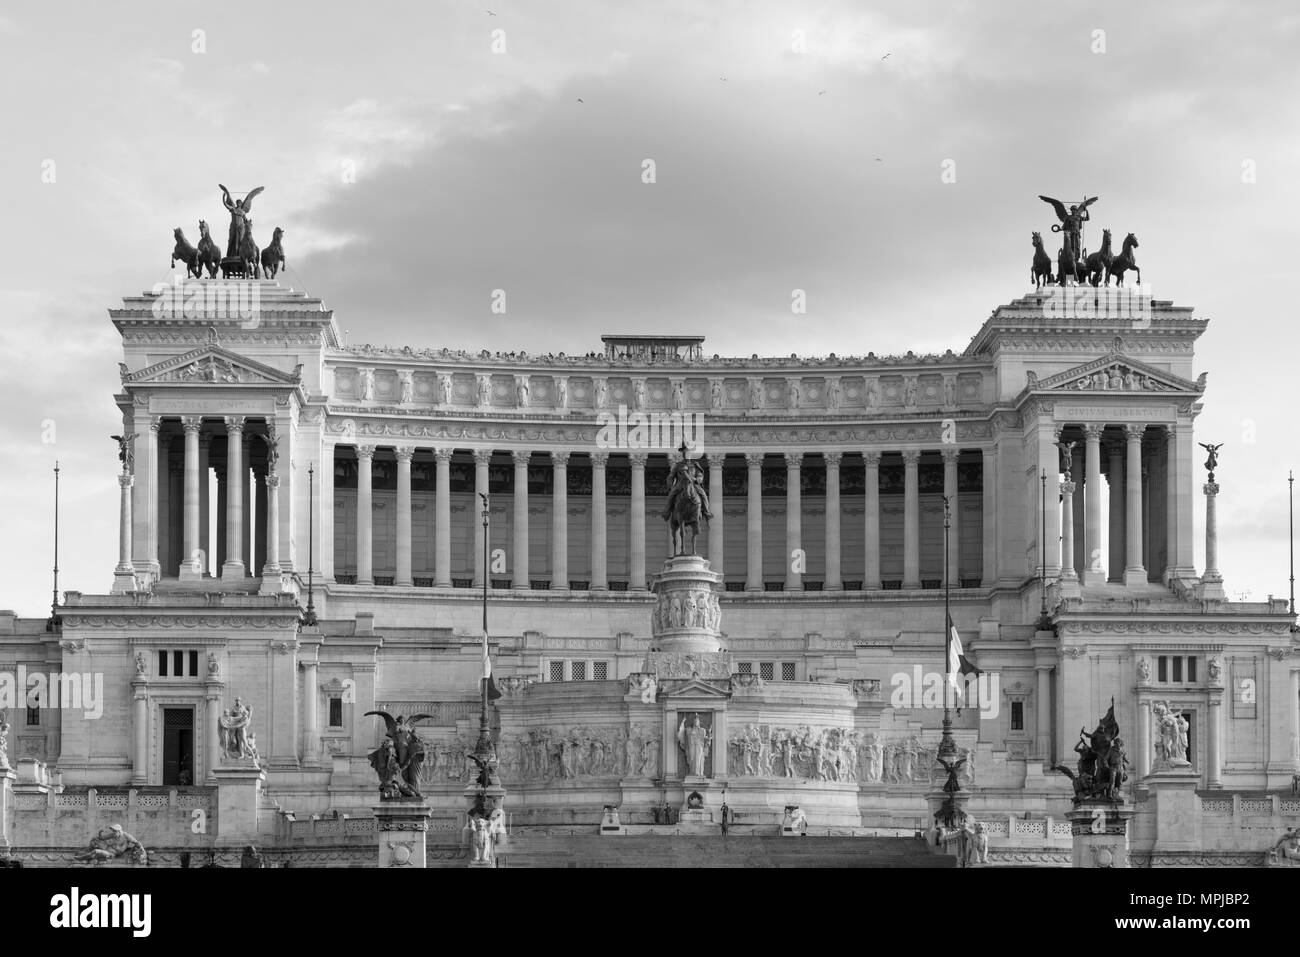 Photo noir et blanc de la façade de l'immense Victor Emanuele Monument à Rome Italie Banque D'Images